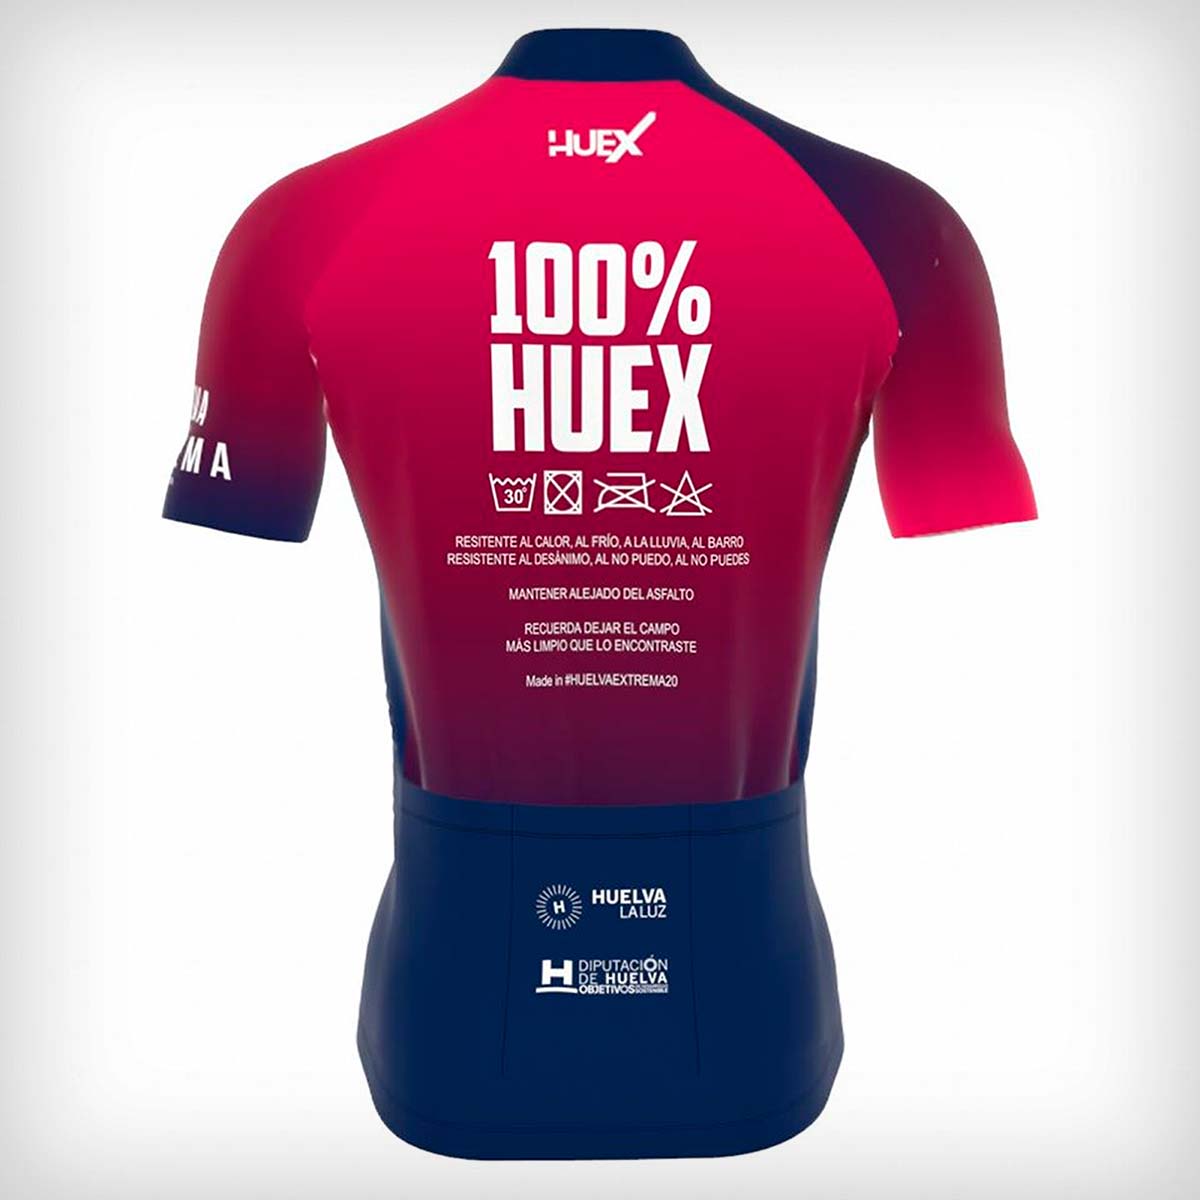 En TodoMountainBike: Presentado el maillot oficial de la Huelva Extrema 2020